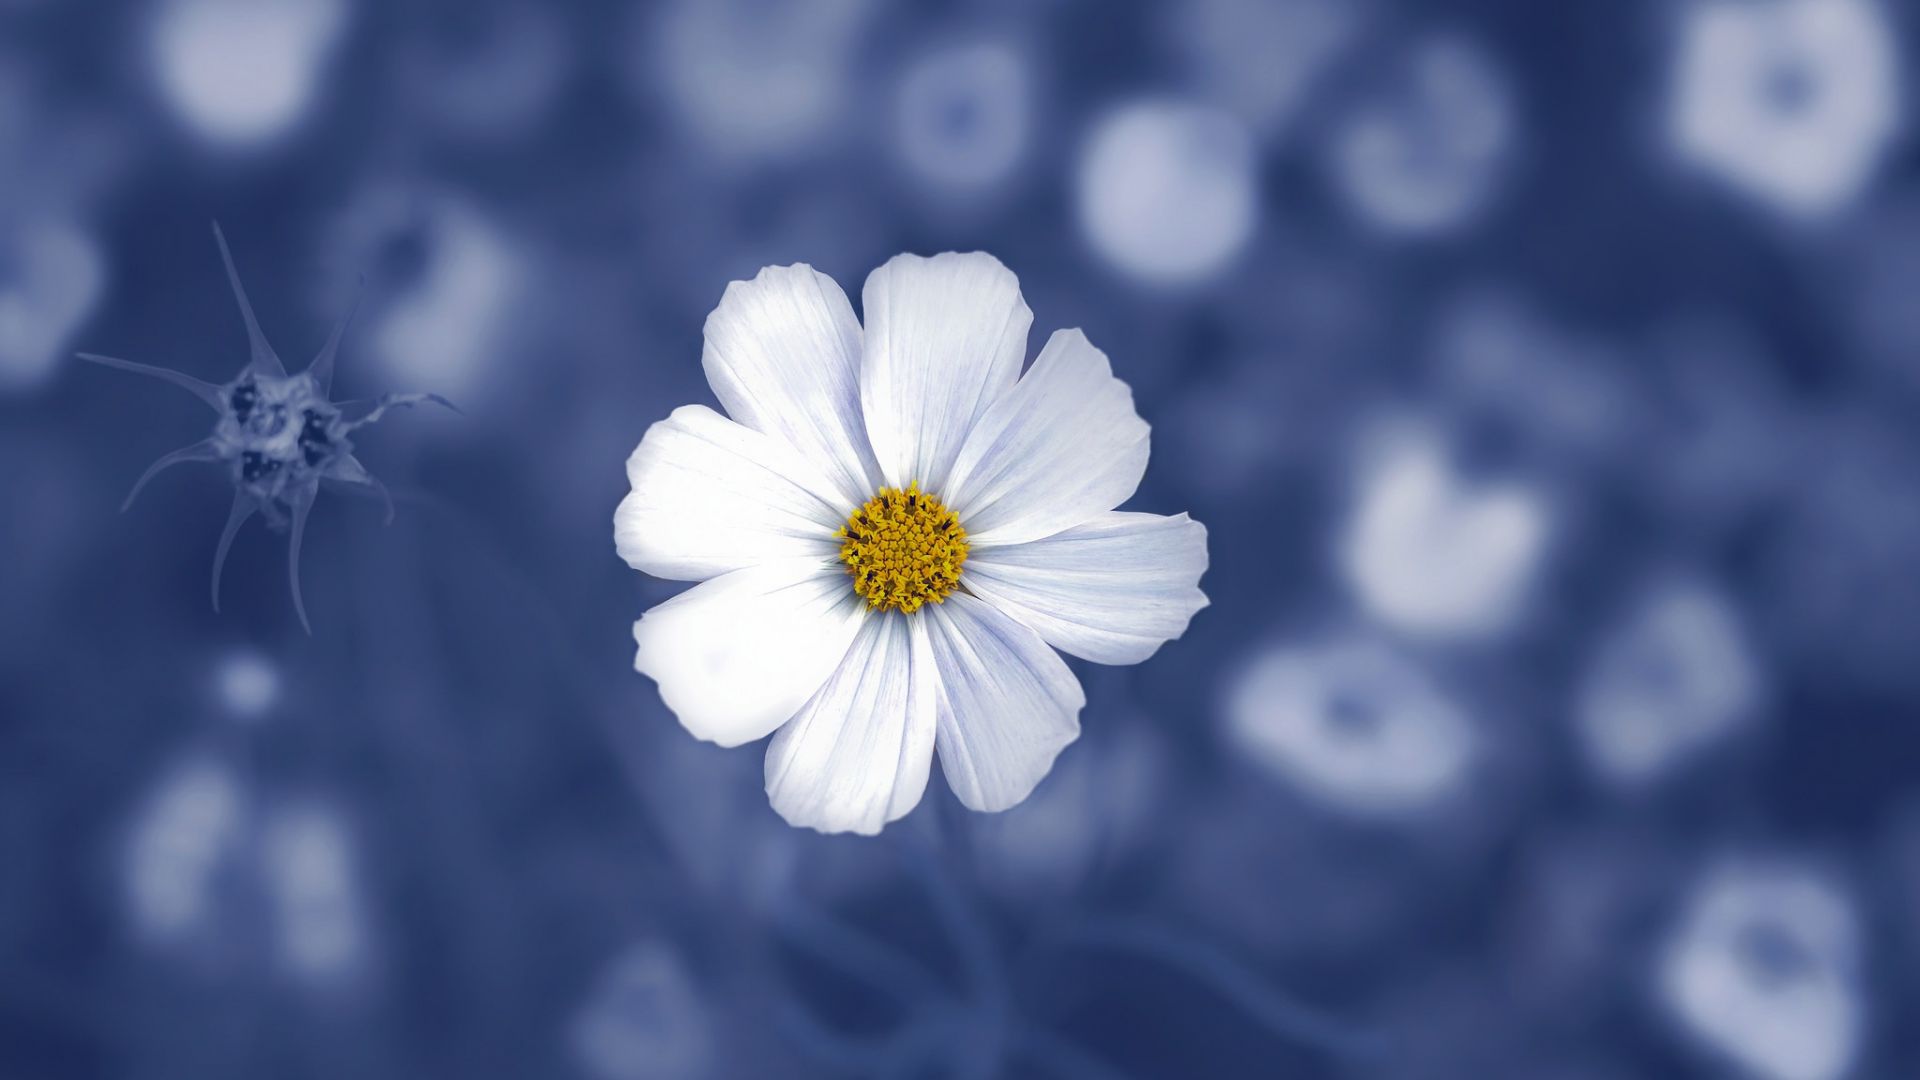 Wallpaper Daisy flower, portrait